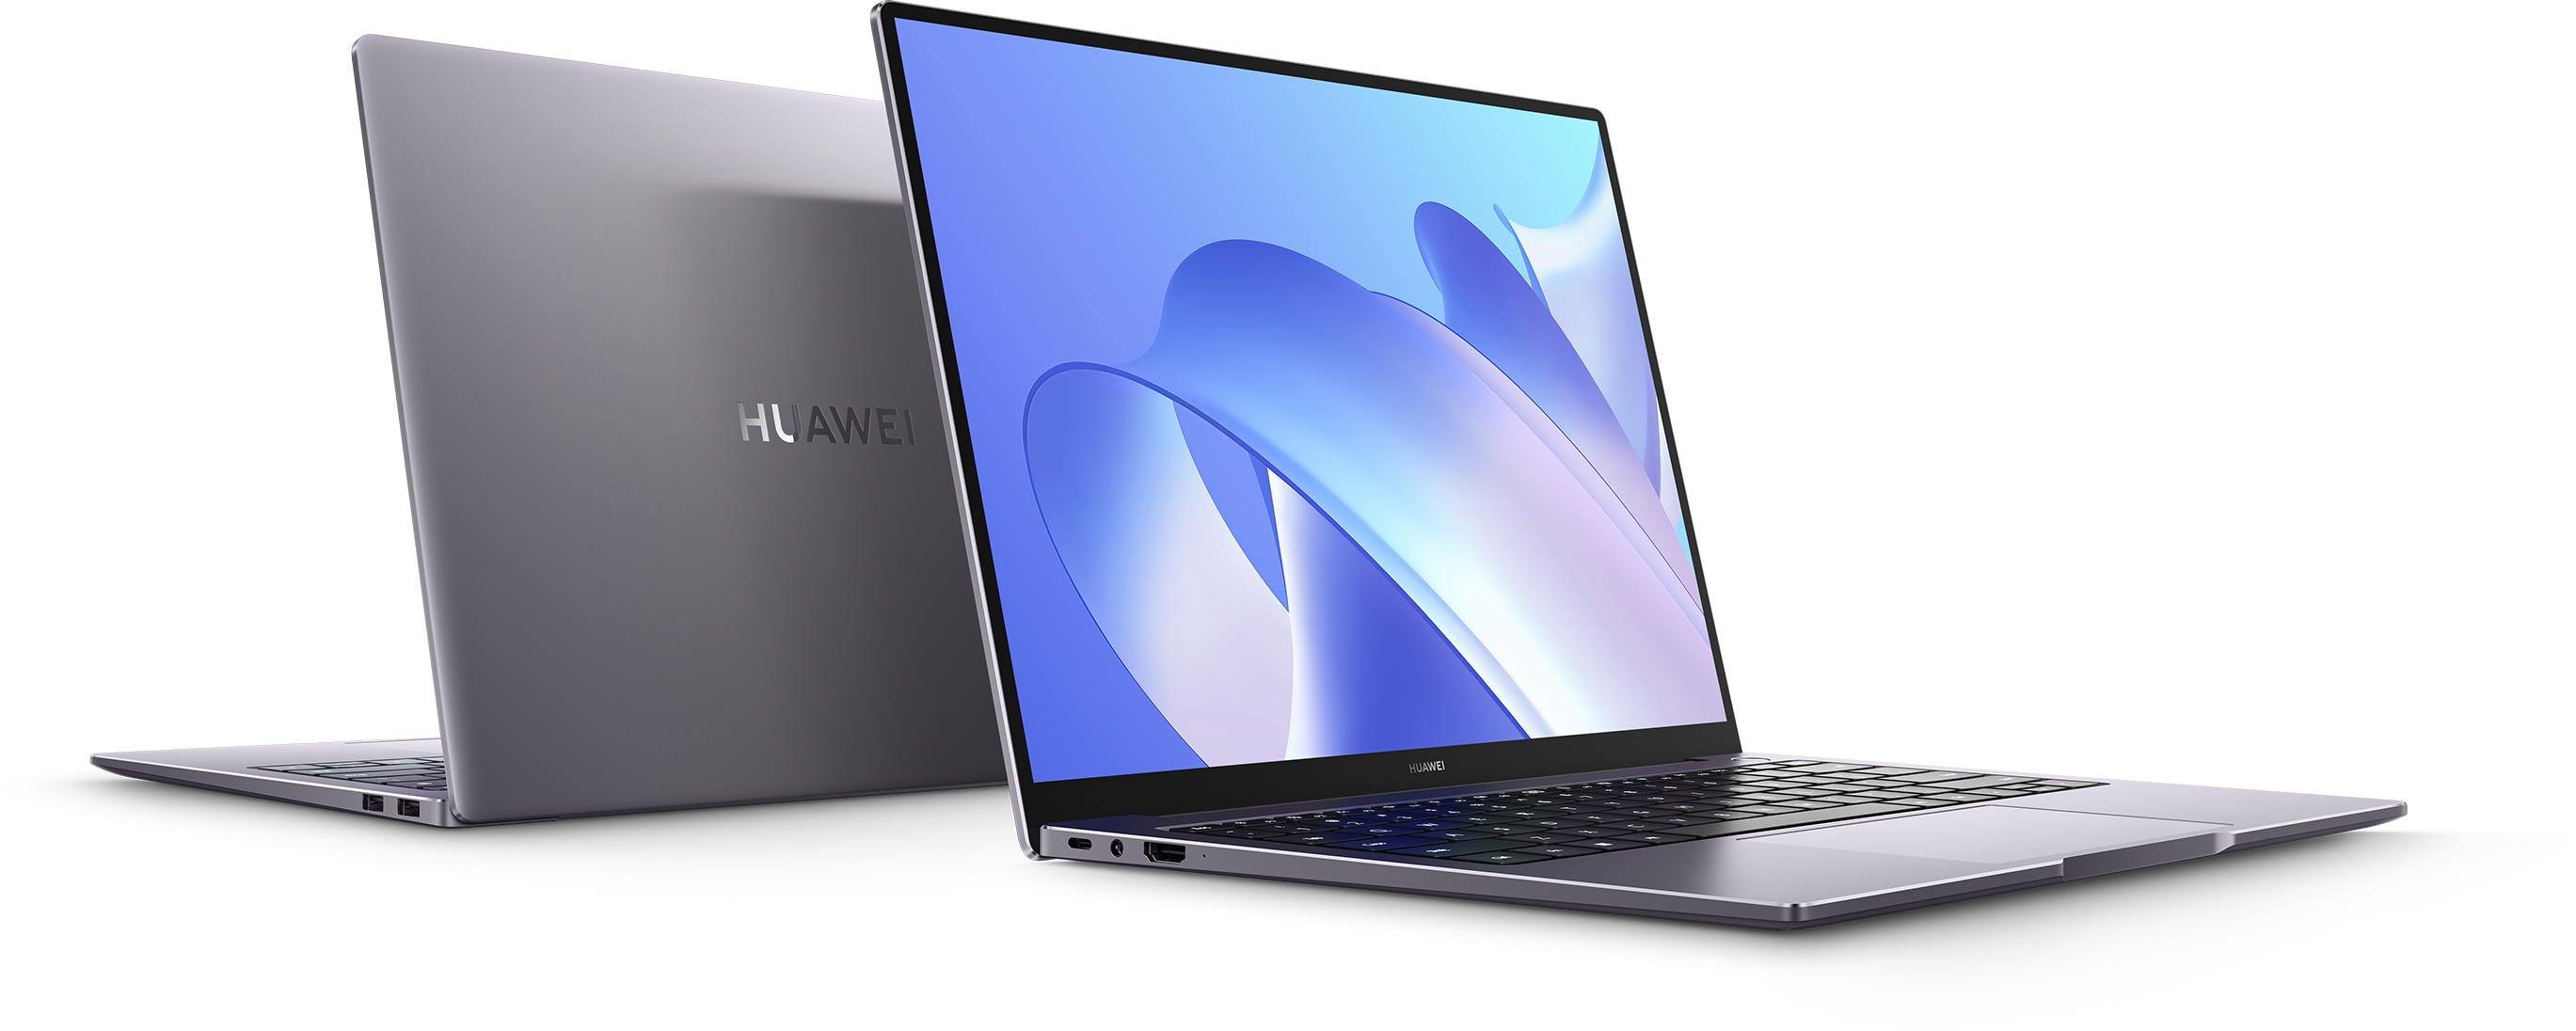 Huawei – Matebook D 15 2022 Pc Portable I7-1195g7, Meilleur